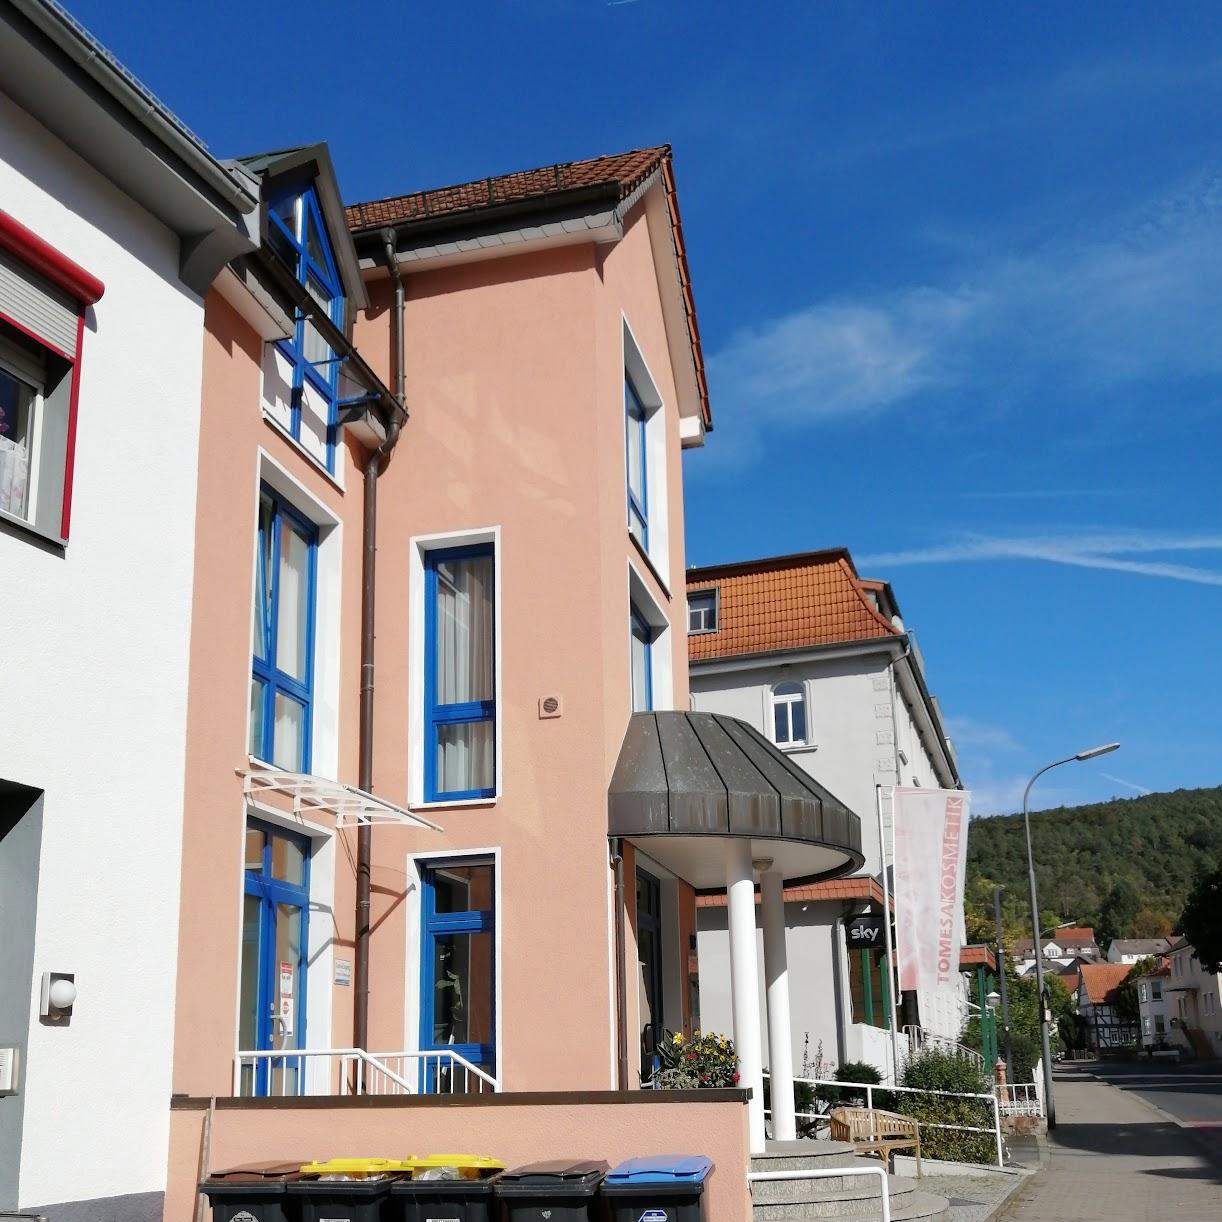 Restaurant "Tomesa Fachklinik und Gesundheitszentrum" in Bad Salzschlirf